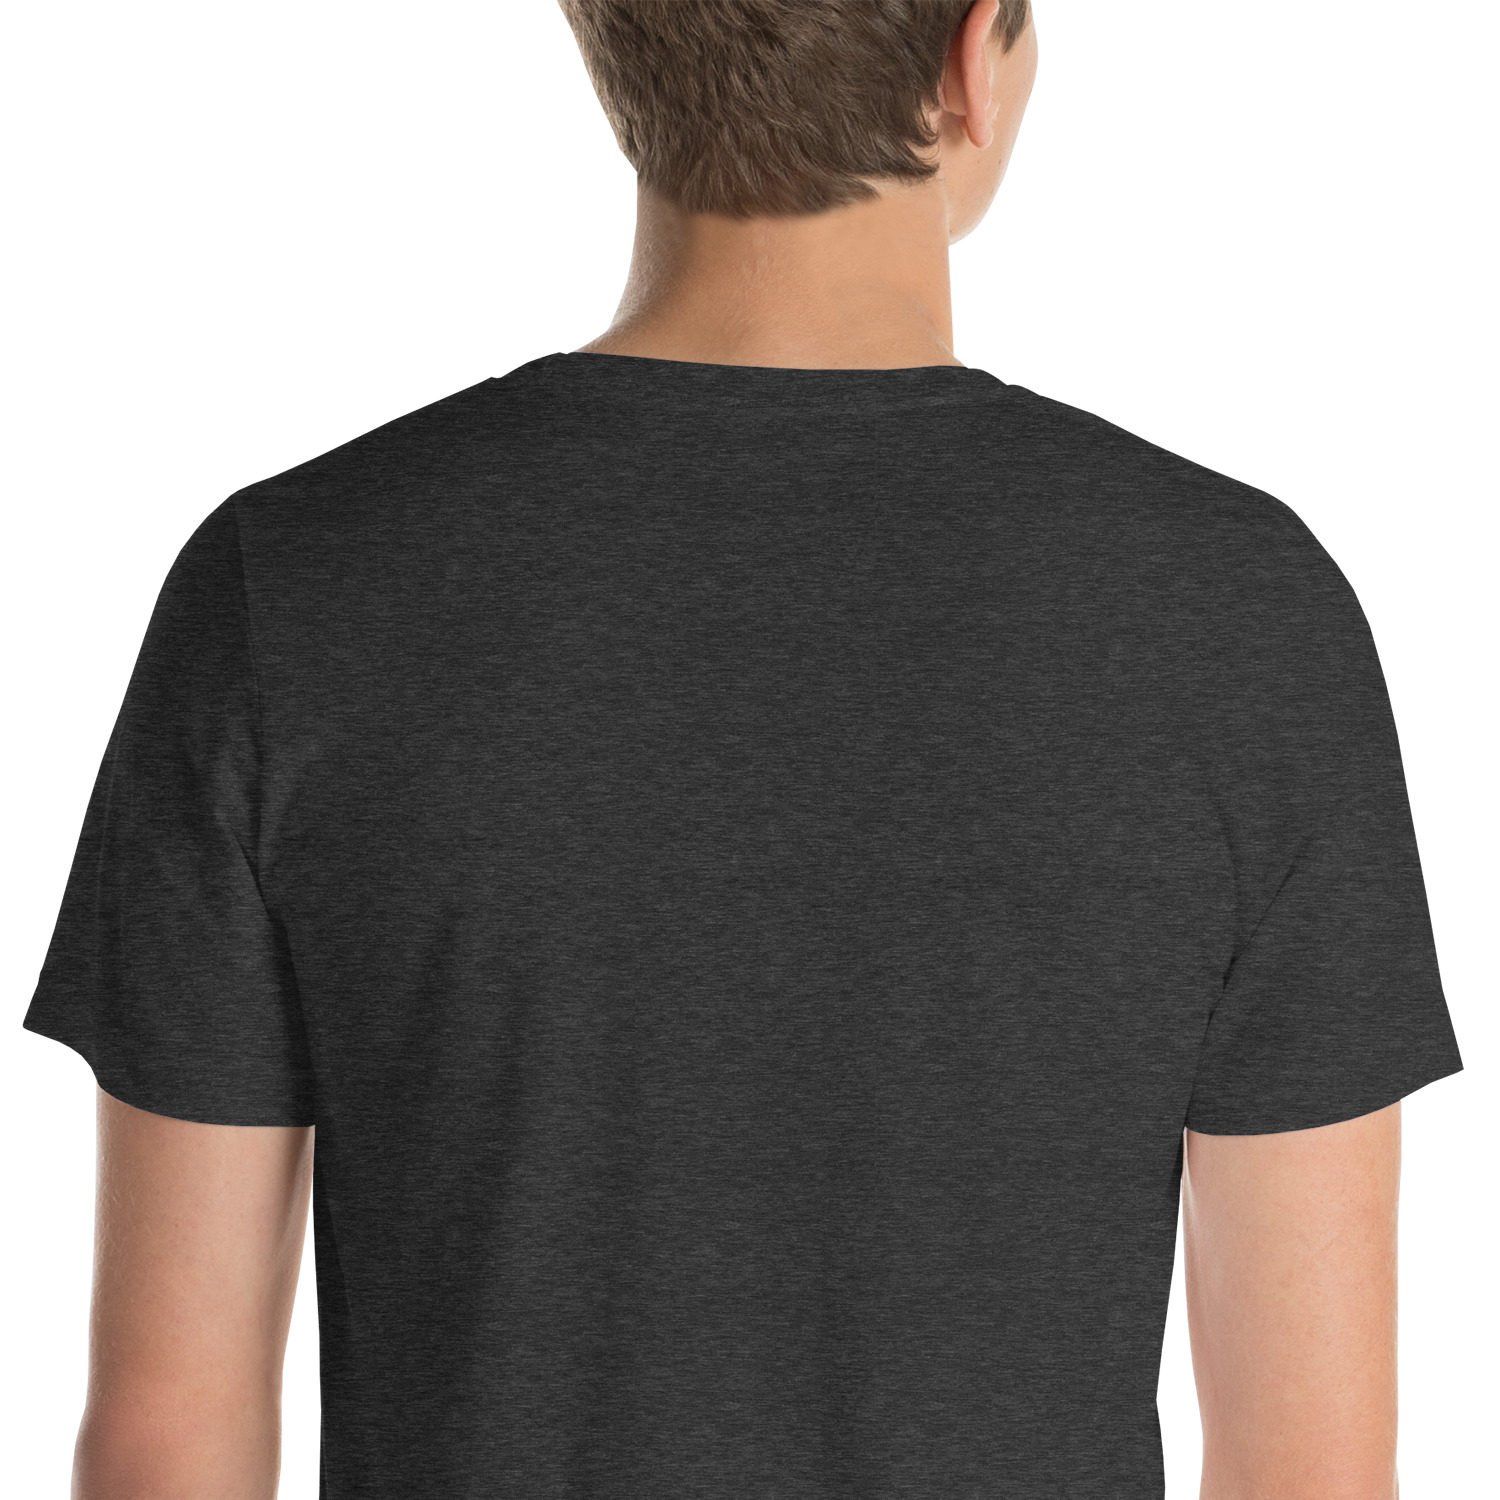 The Riverwalk District Unisex t-shirt